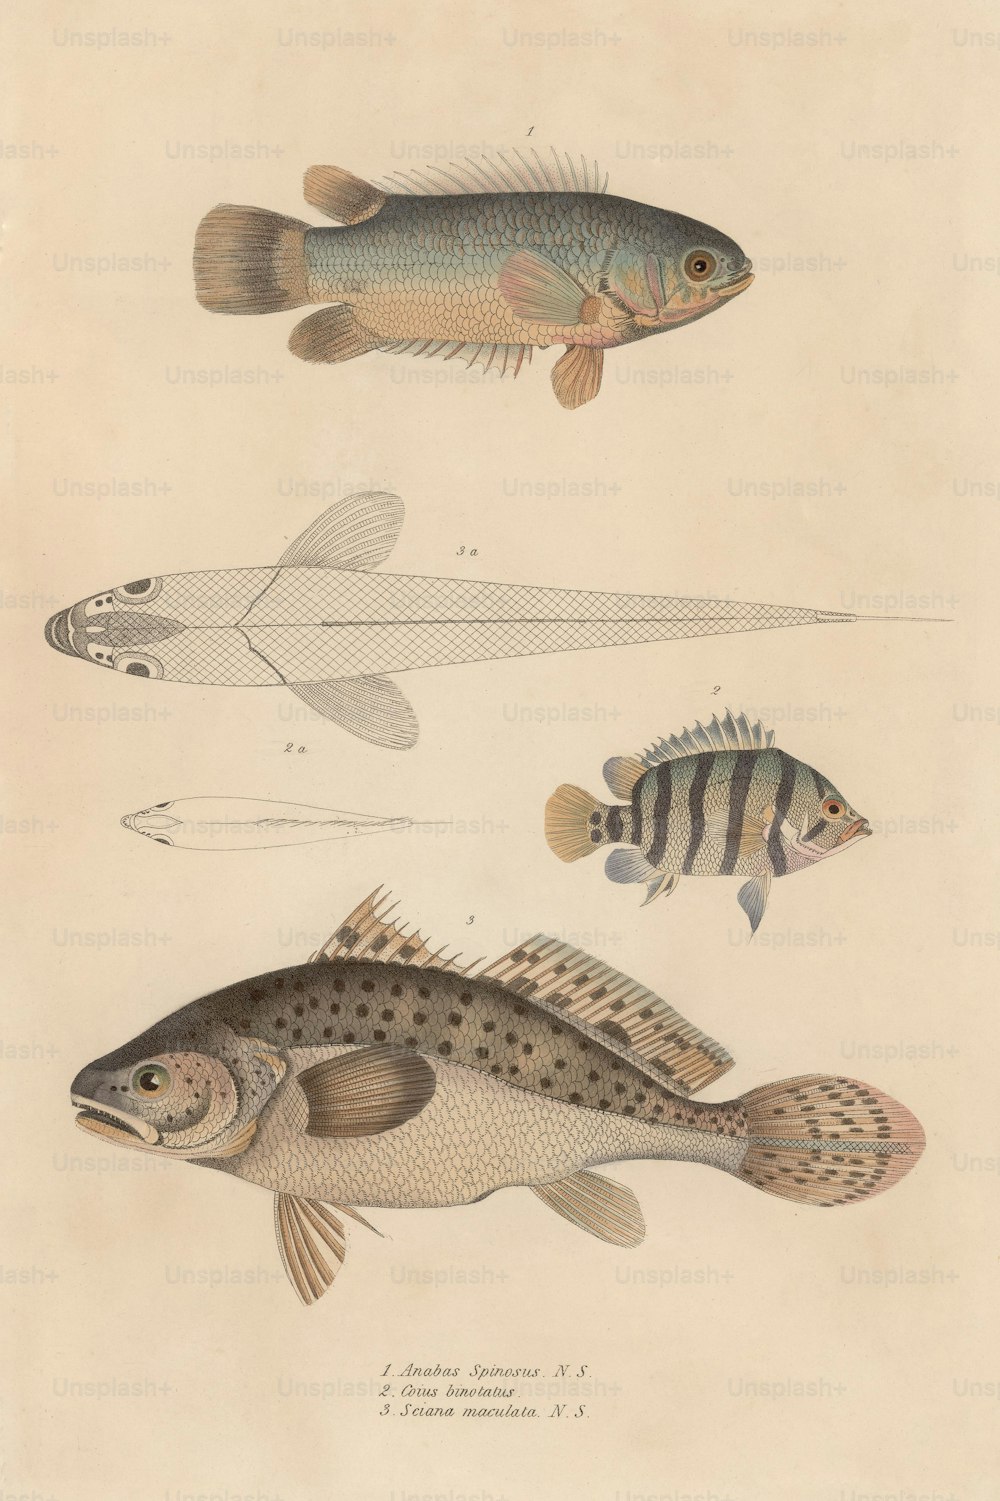 Verschiedene Fische, darunter Anabas spinosus, Coius binotatus und Sciana maculata, um 1850. (Foto von Hulton Archive / Getty Images)